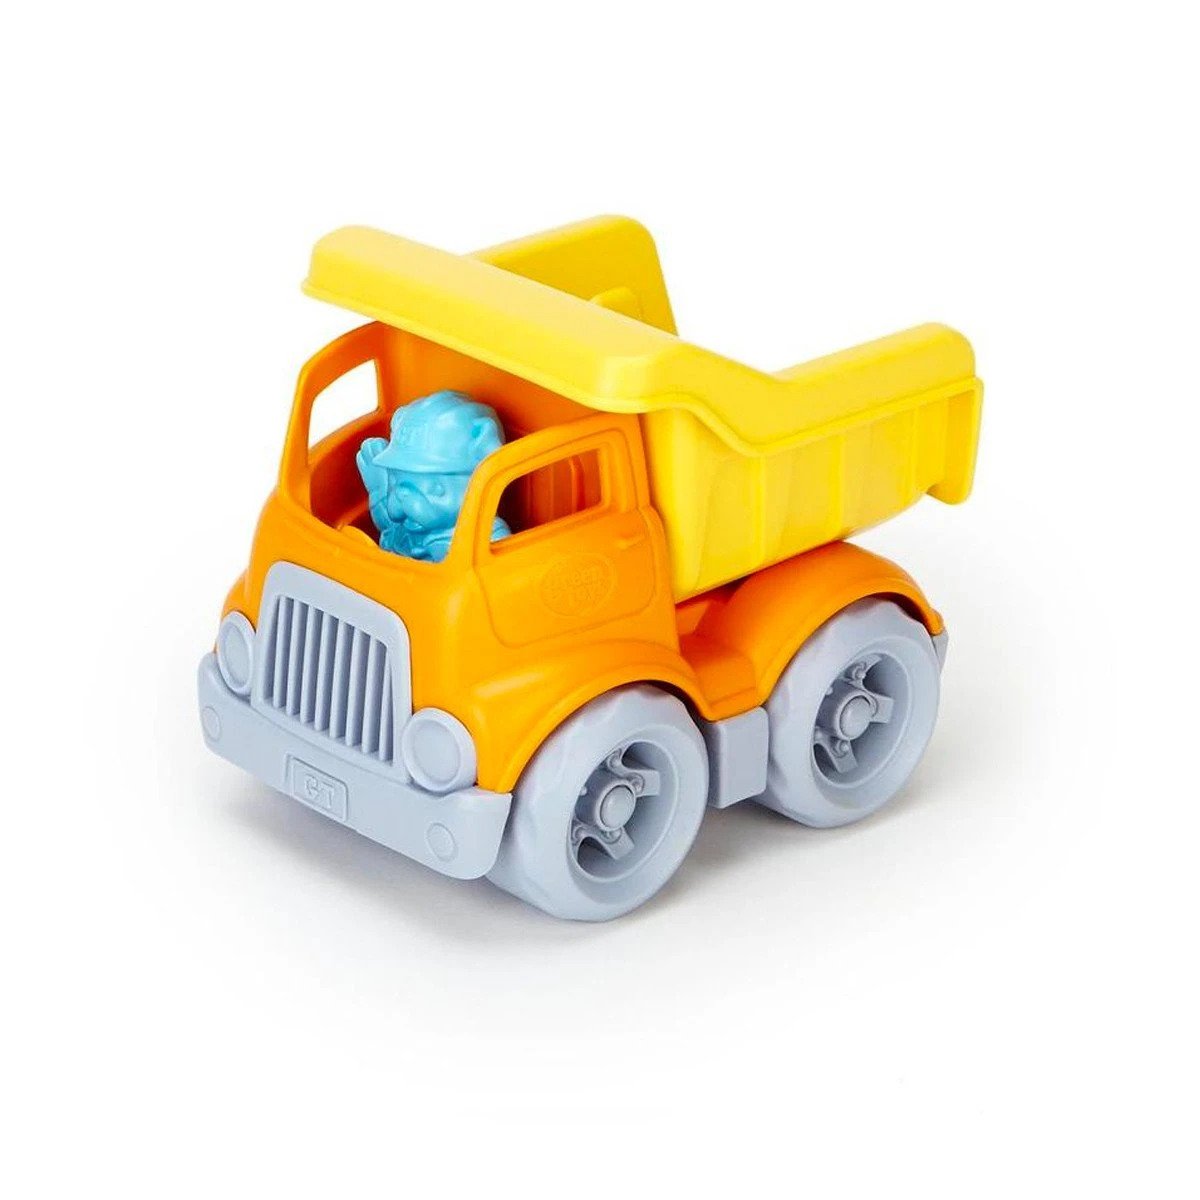 Green Toys - Construction Mixer